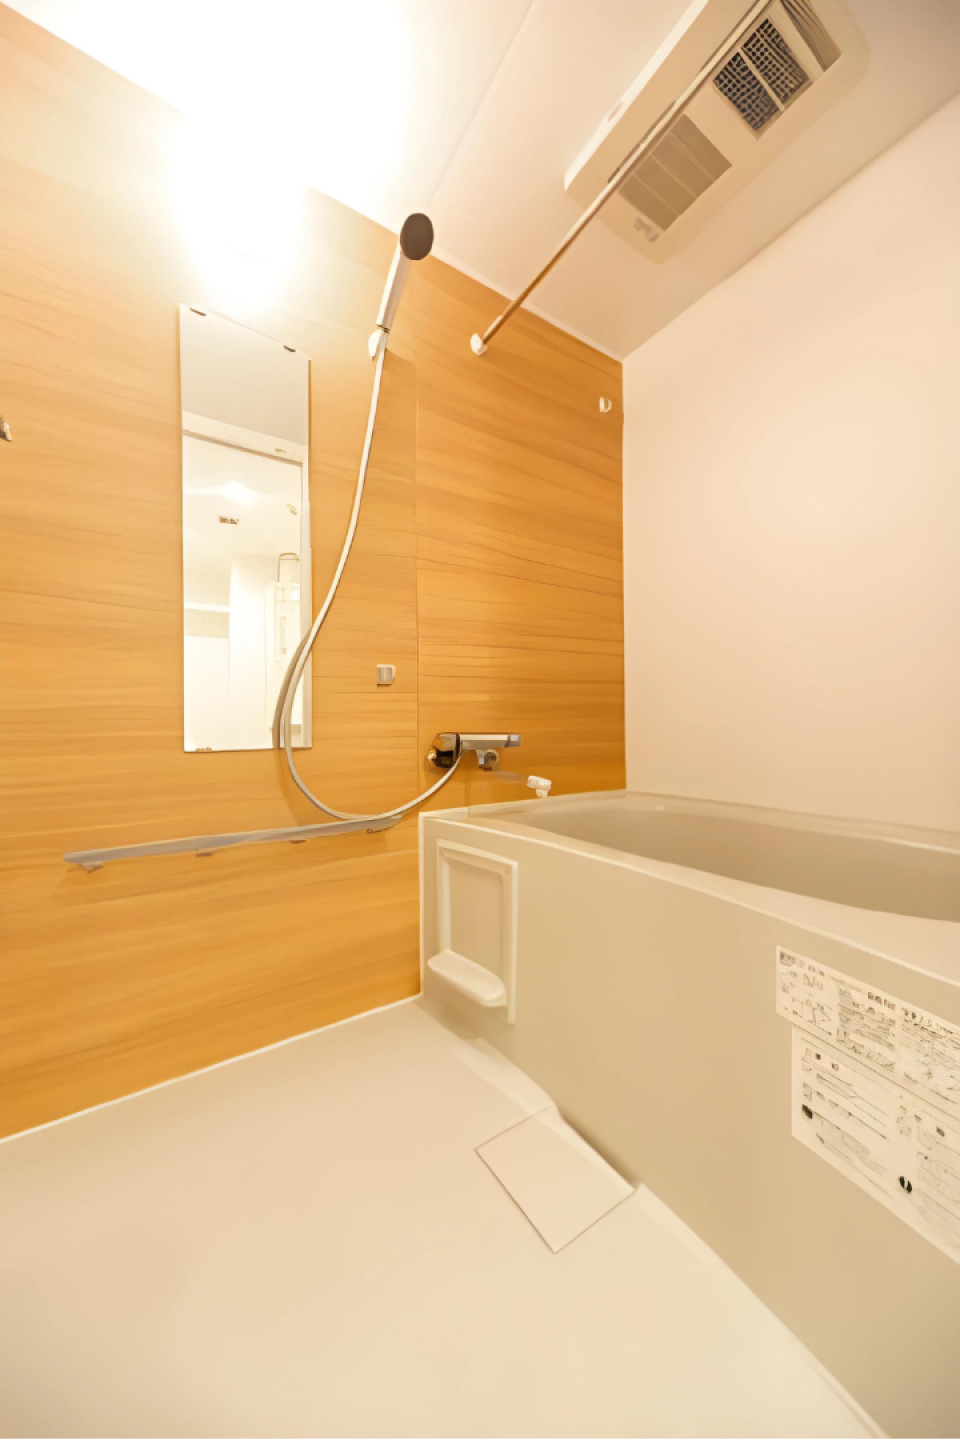 木目調のパネルが導入された浴室です。※写真は同タイプ住戸です。